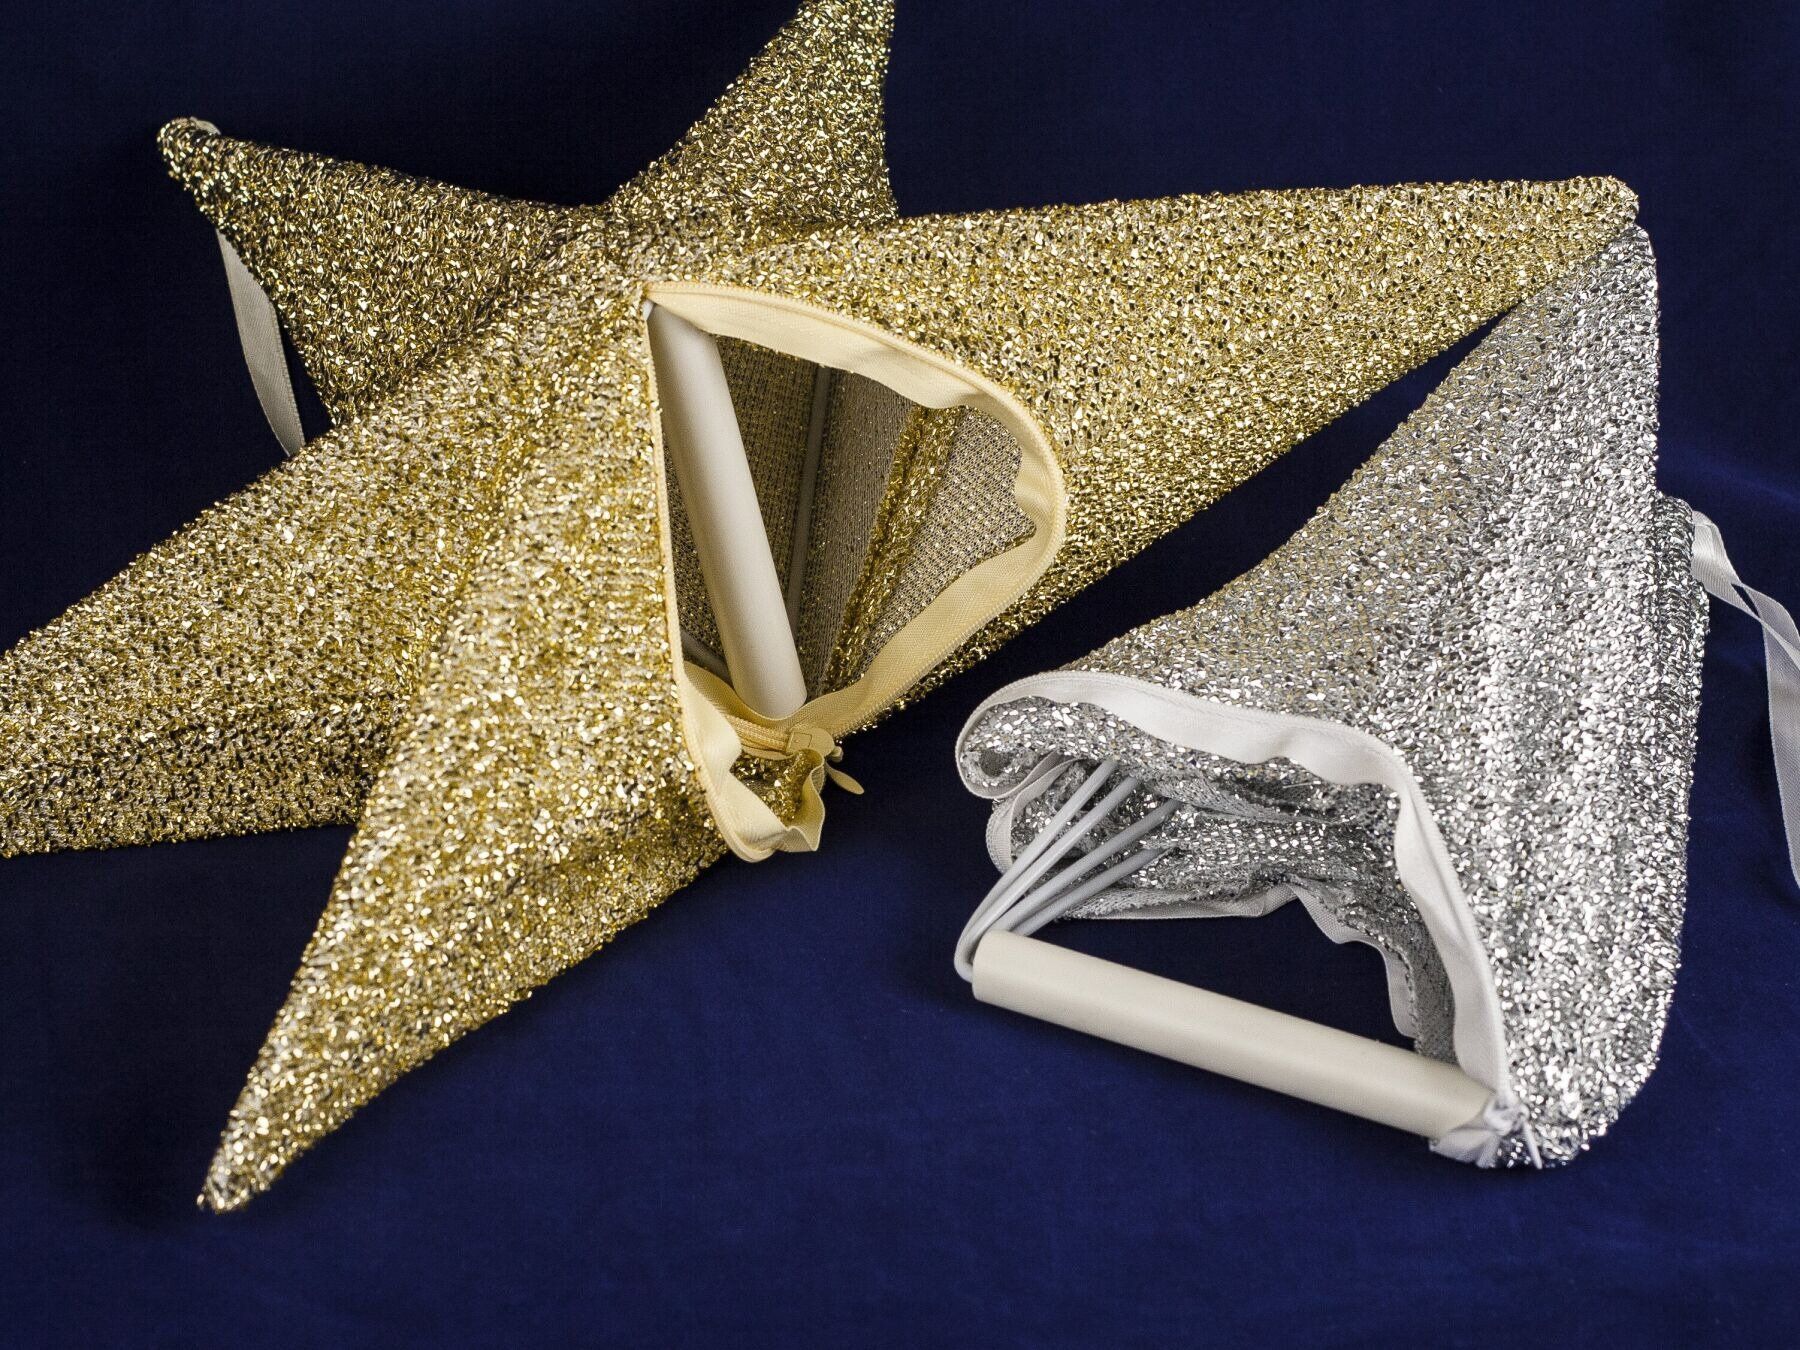 Новорічний декор підвісна зірка з тканини, синя, 40 см